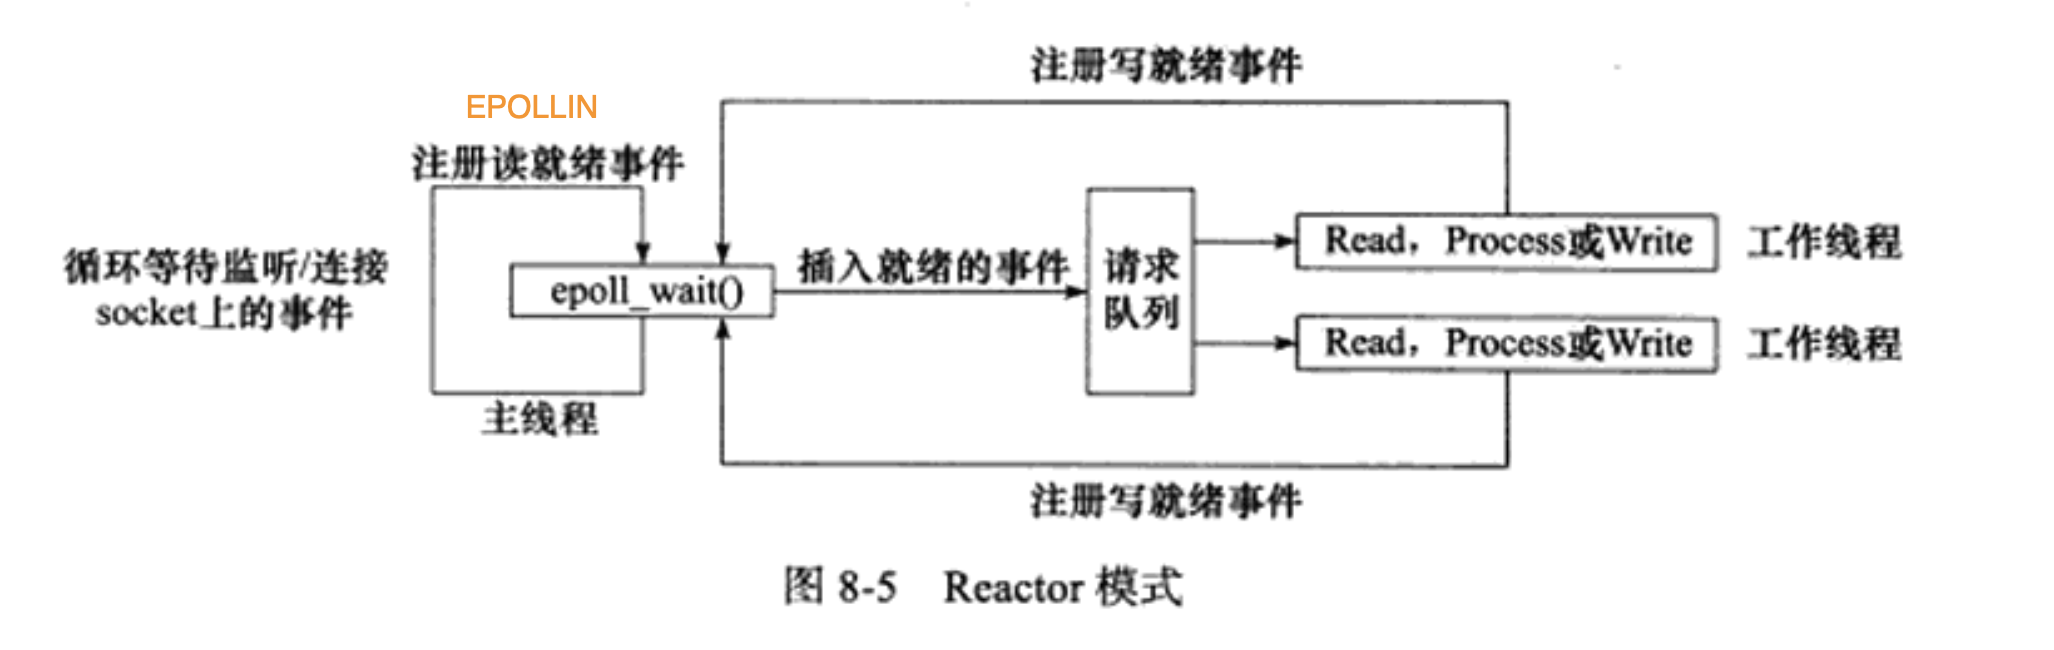 Reactor工作流程